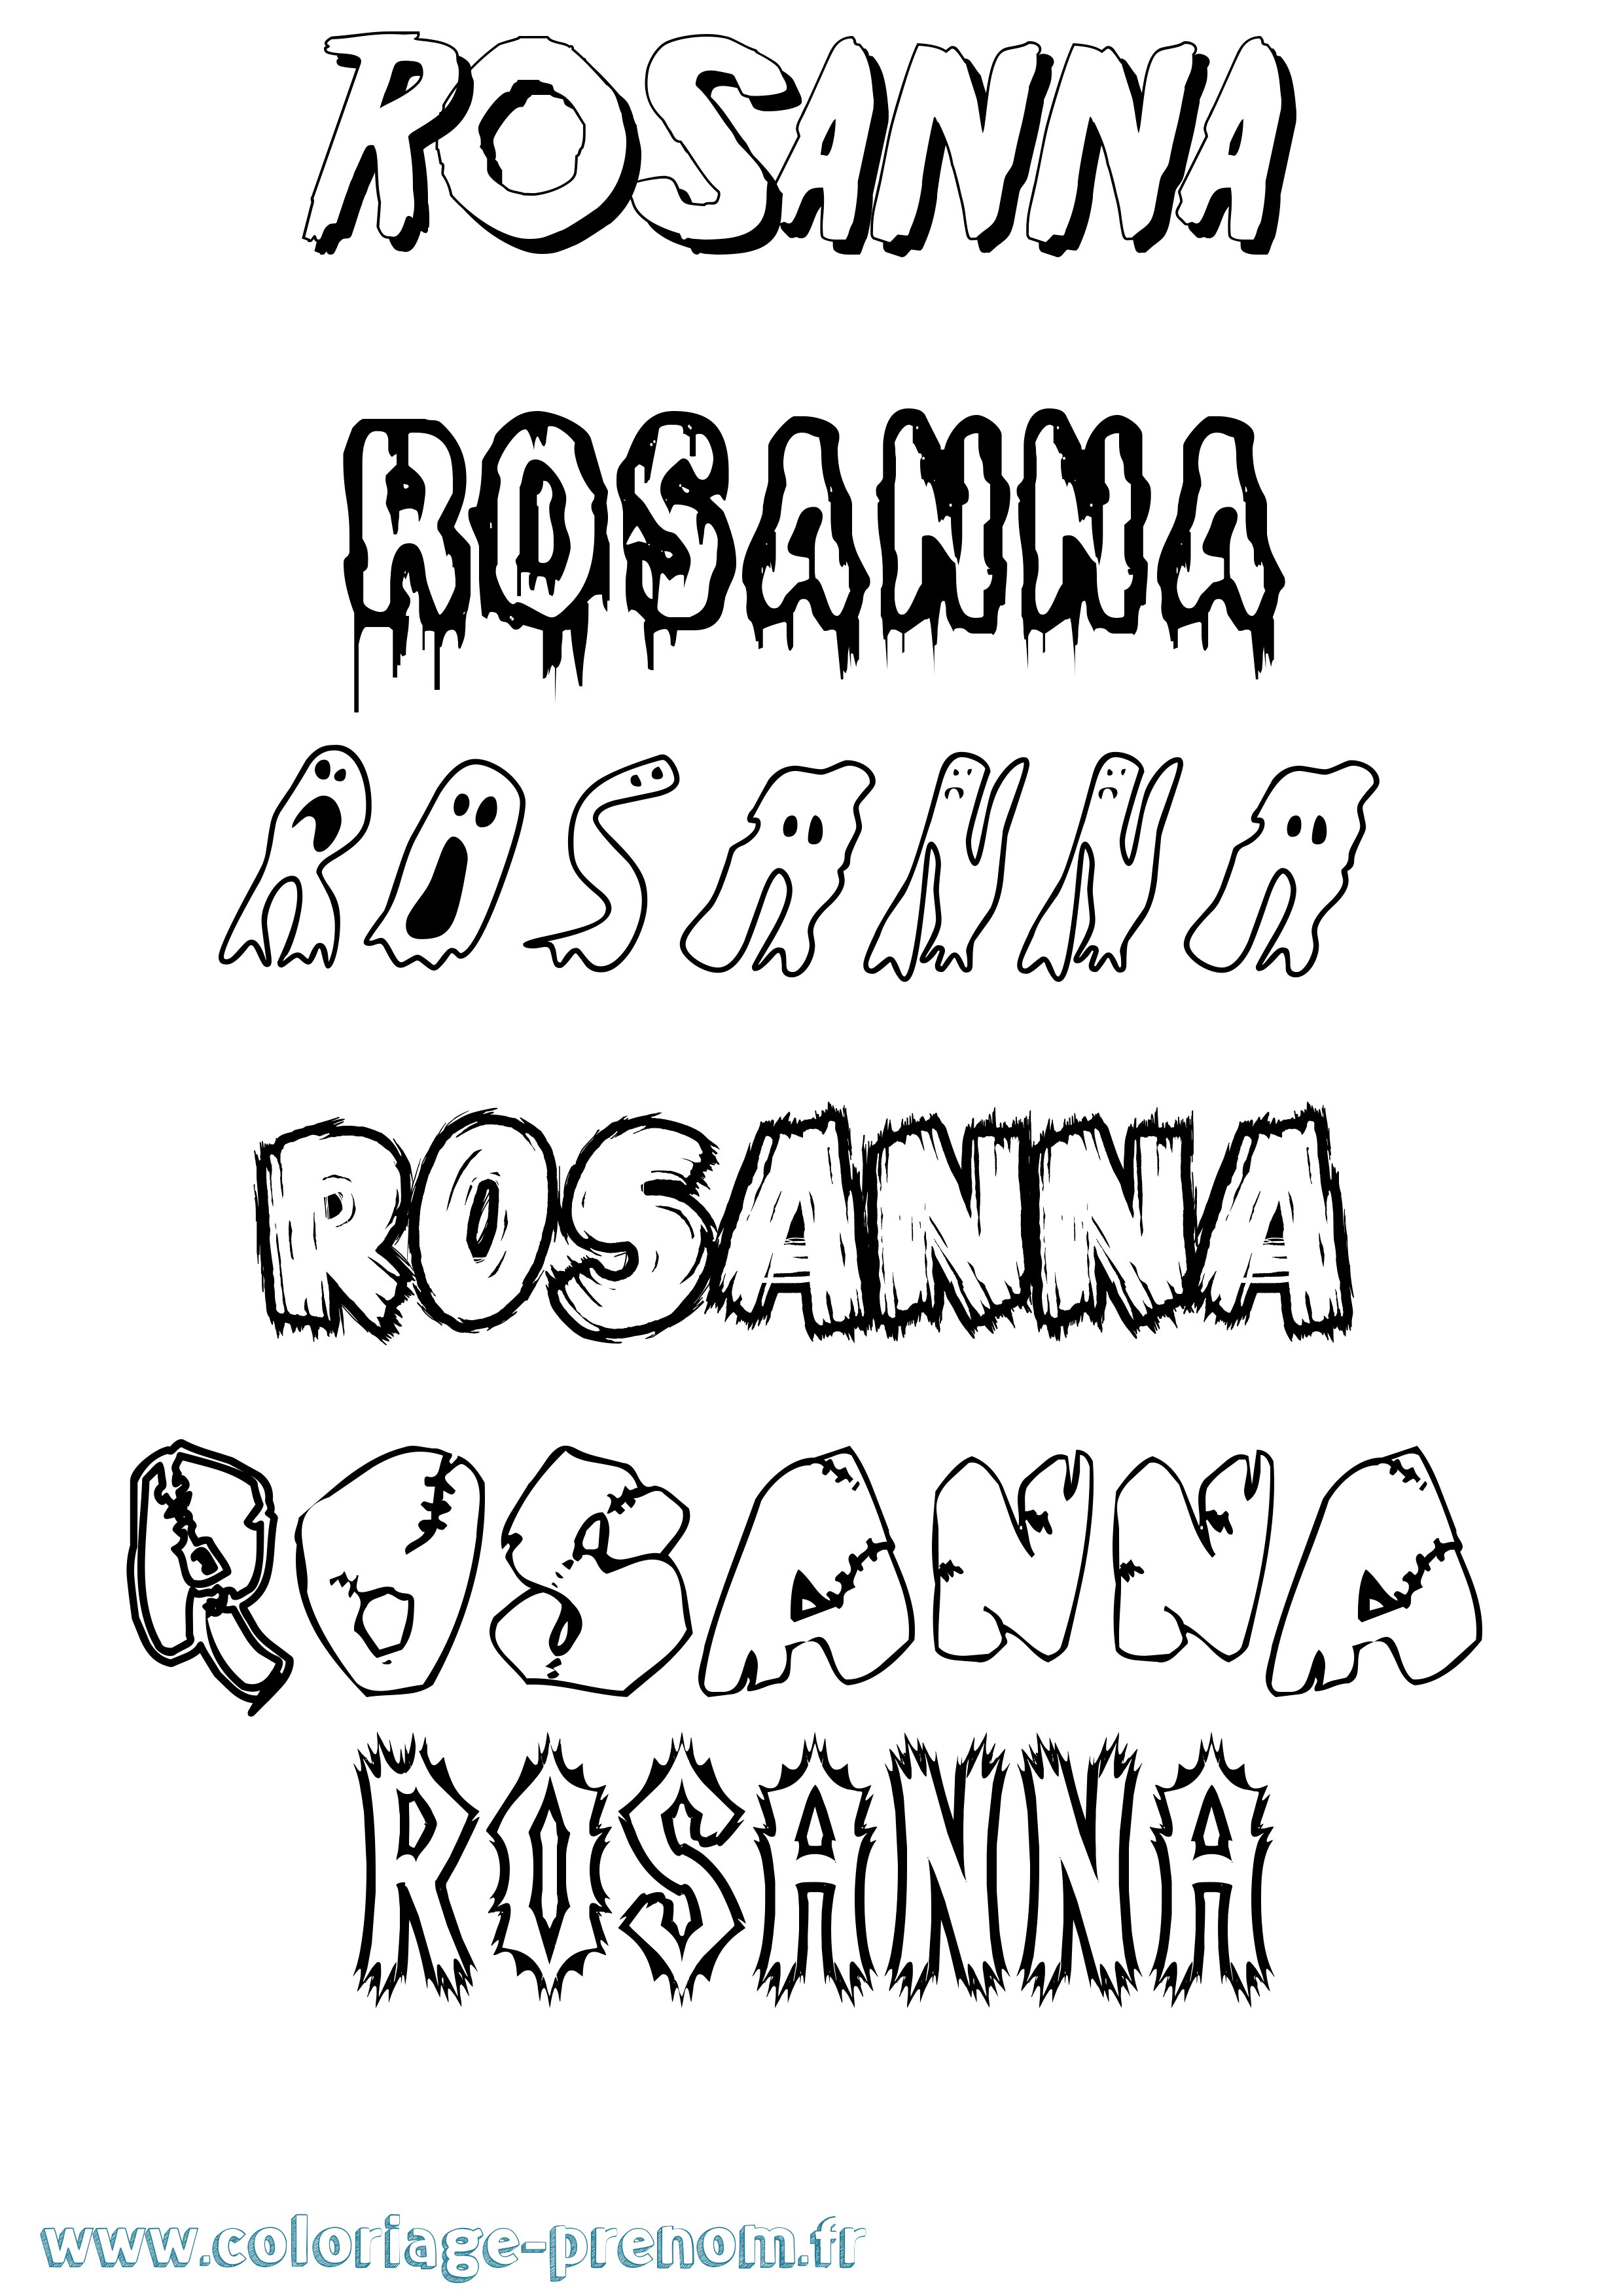 Coloriage prénom Rosanna Frisson